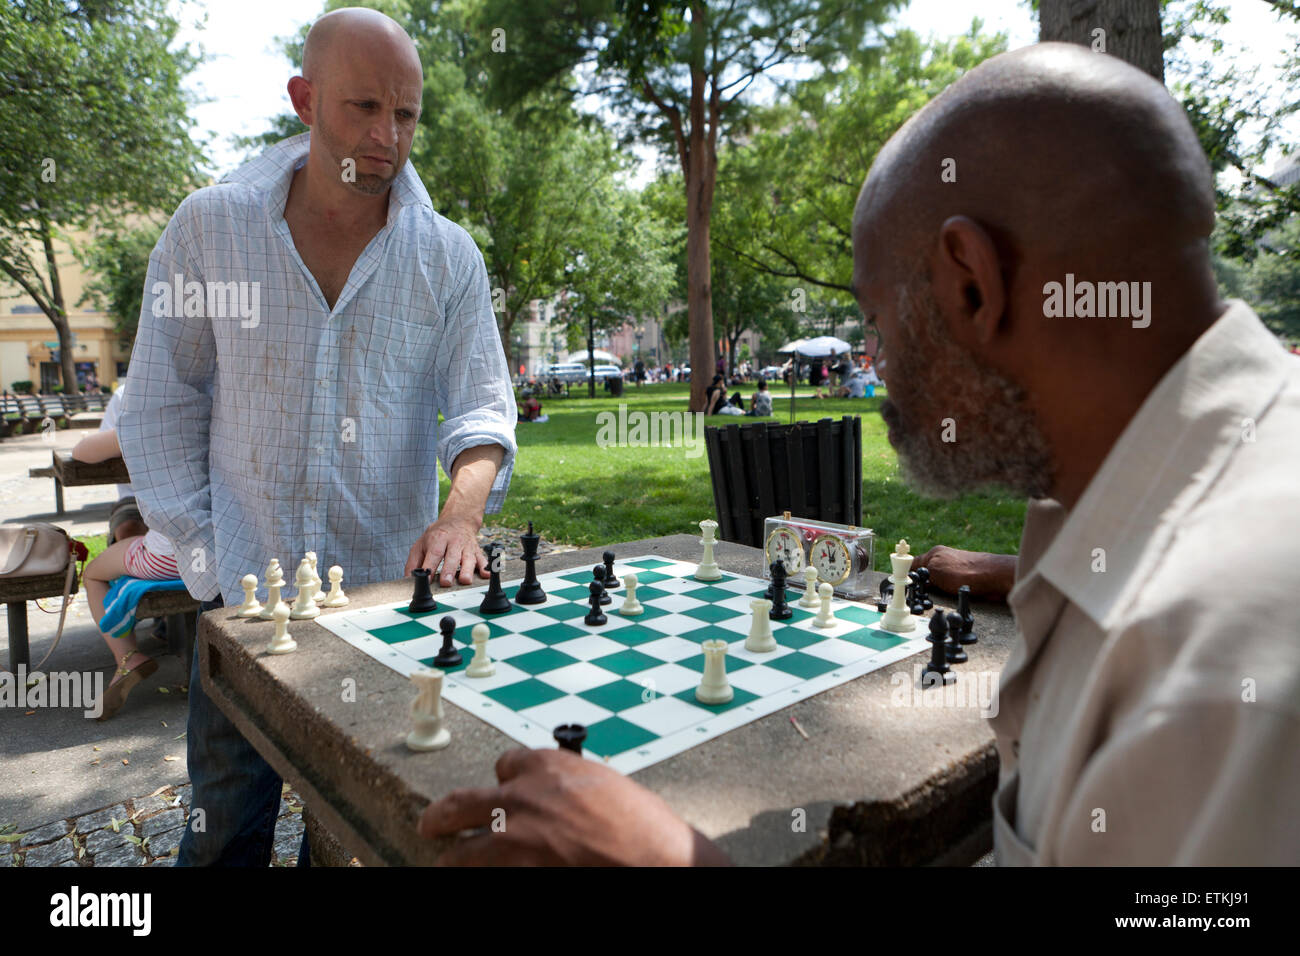 Hombres jugando ajedrez en parque público - tabla de DuPont Circle, Washington, DC, EE.UU. Foto de stock